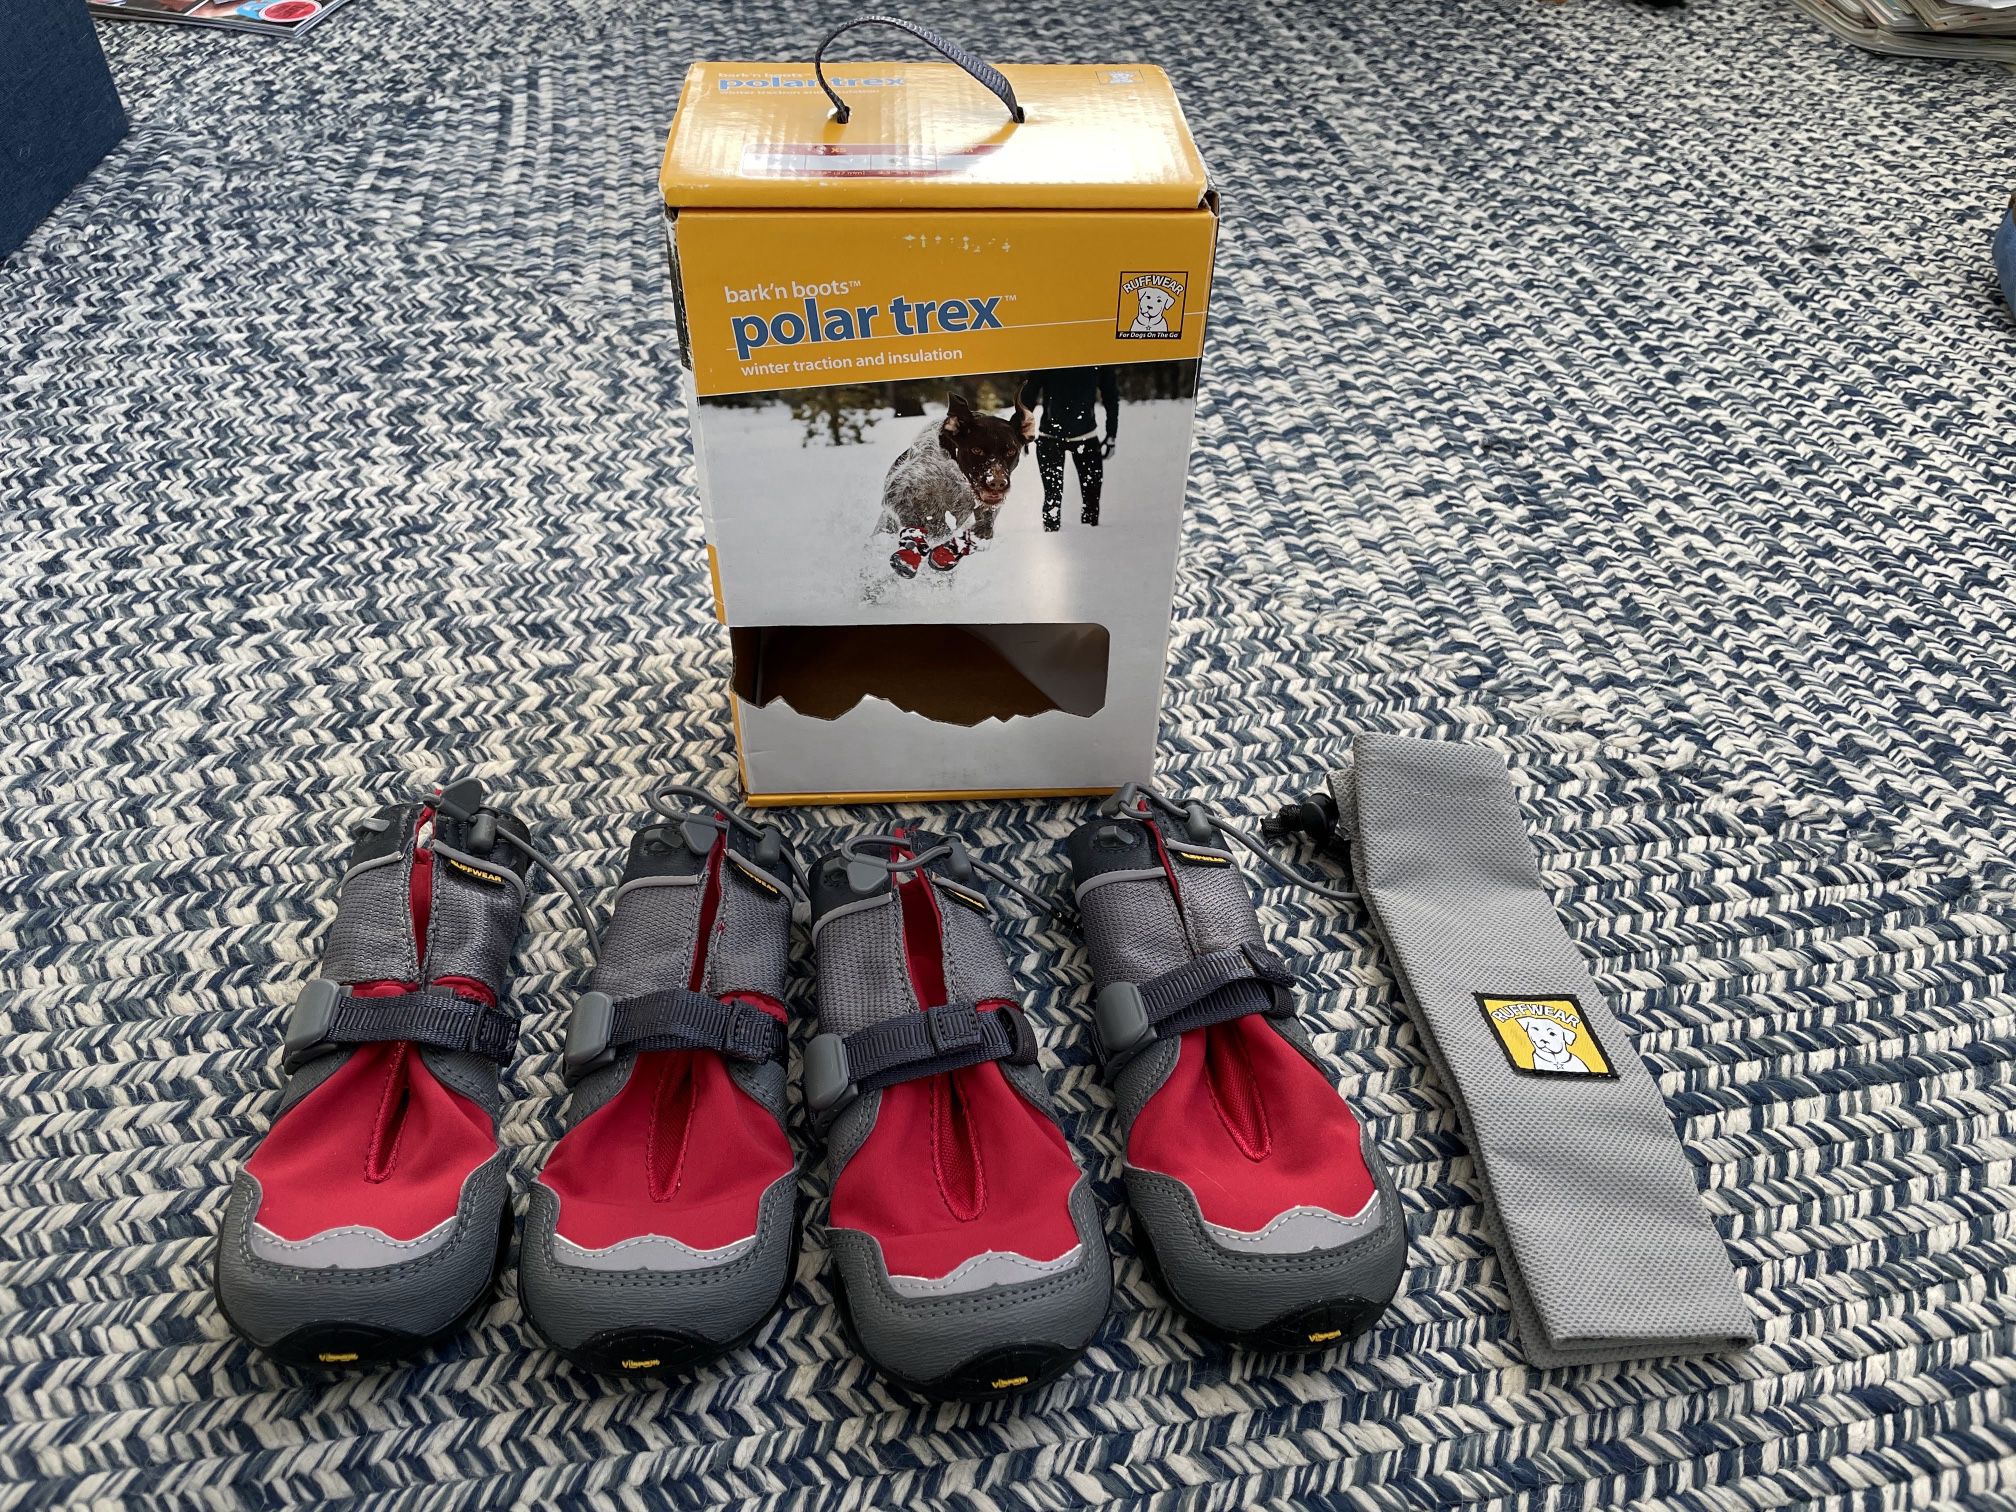 Ruff wear Polar Trex dog boots - 2.5” wide